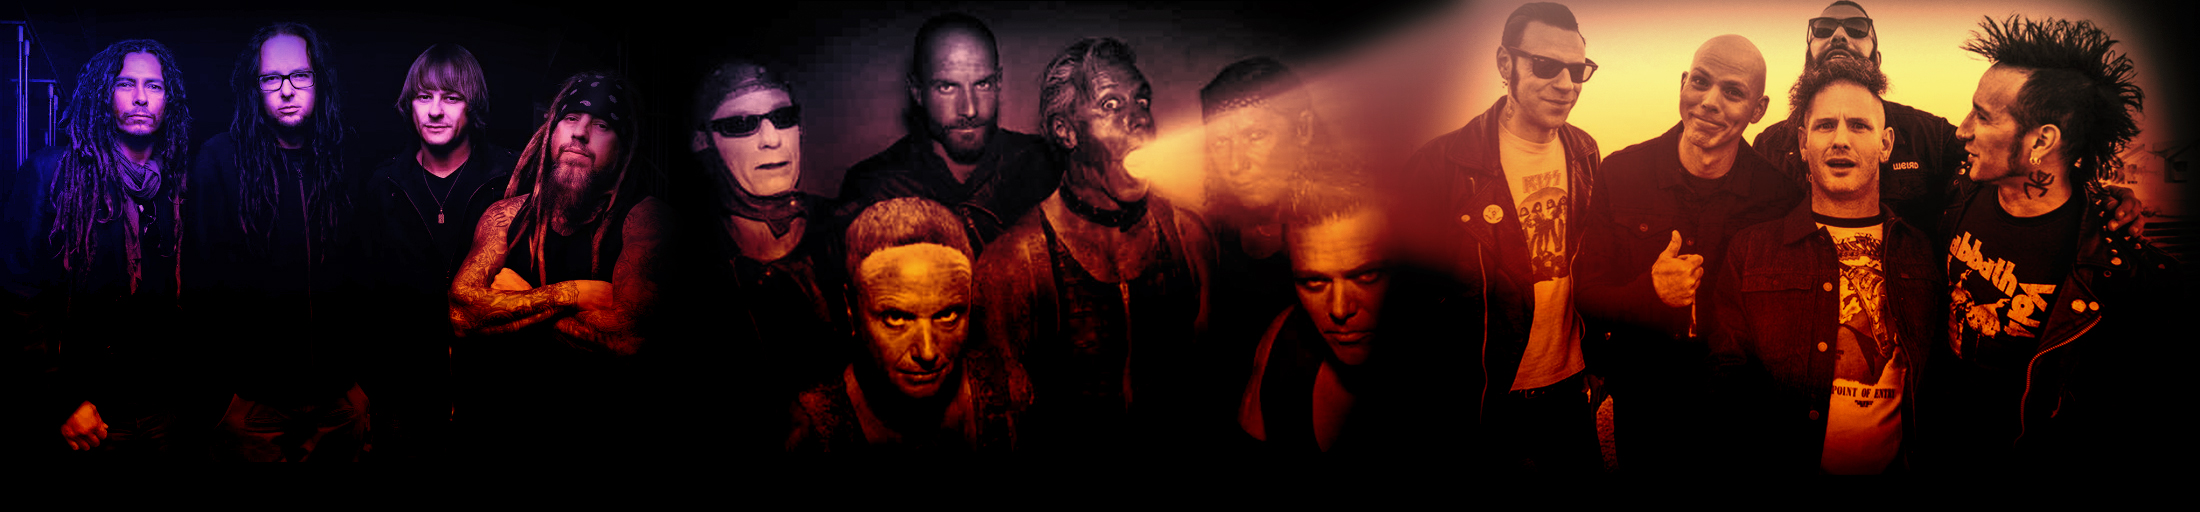 Concierto de Rammstein junto a Korn y Stone Sour